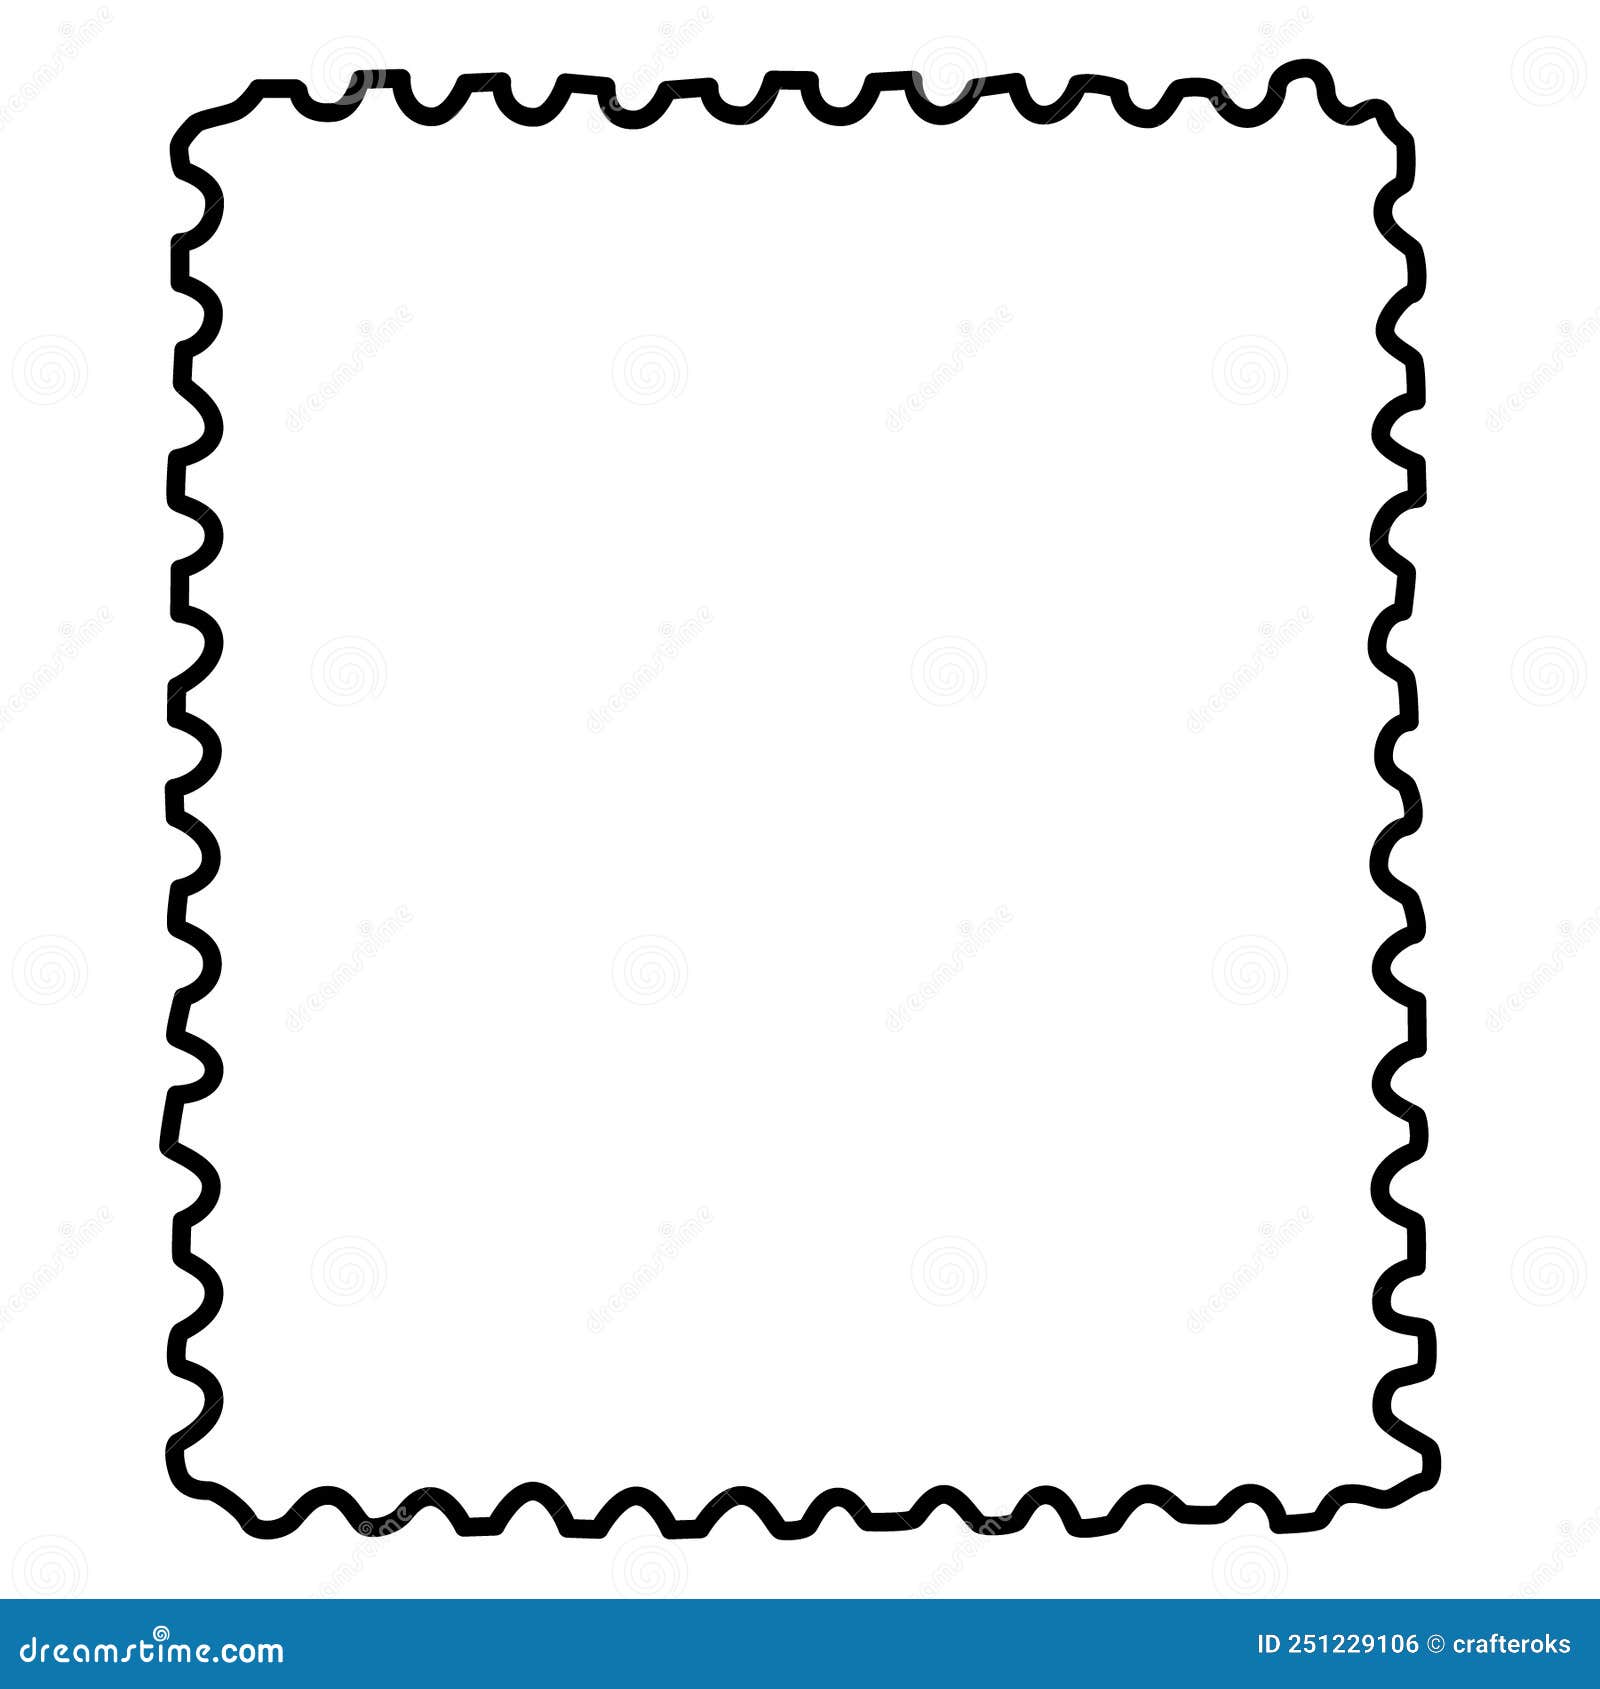 Timbre Poste Logo PNG Vectors Free Download